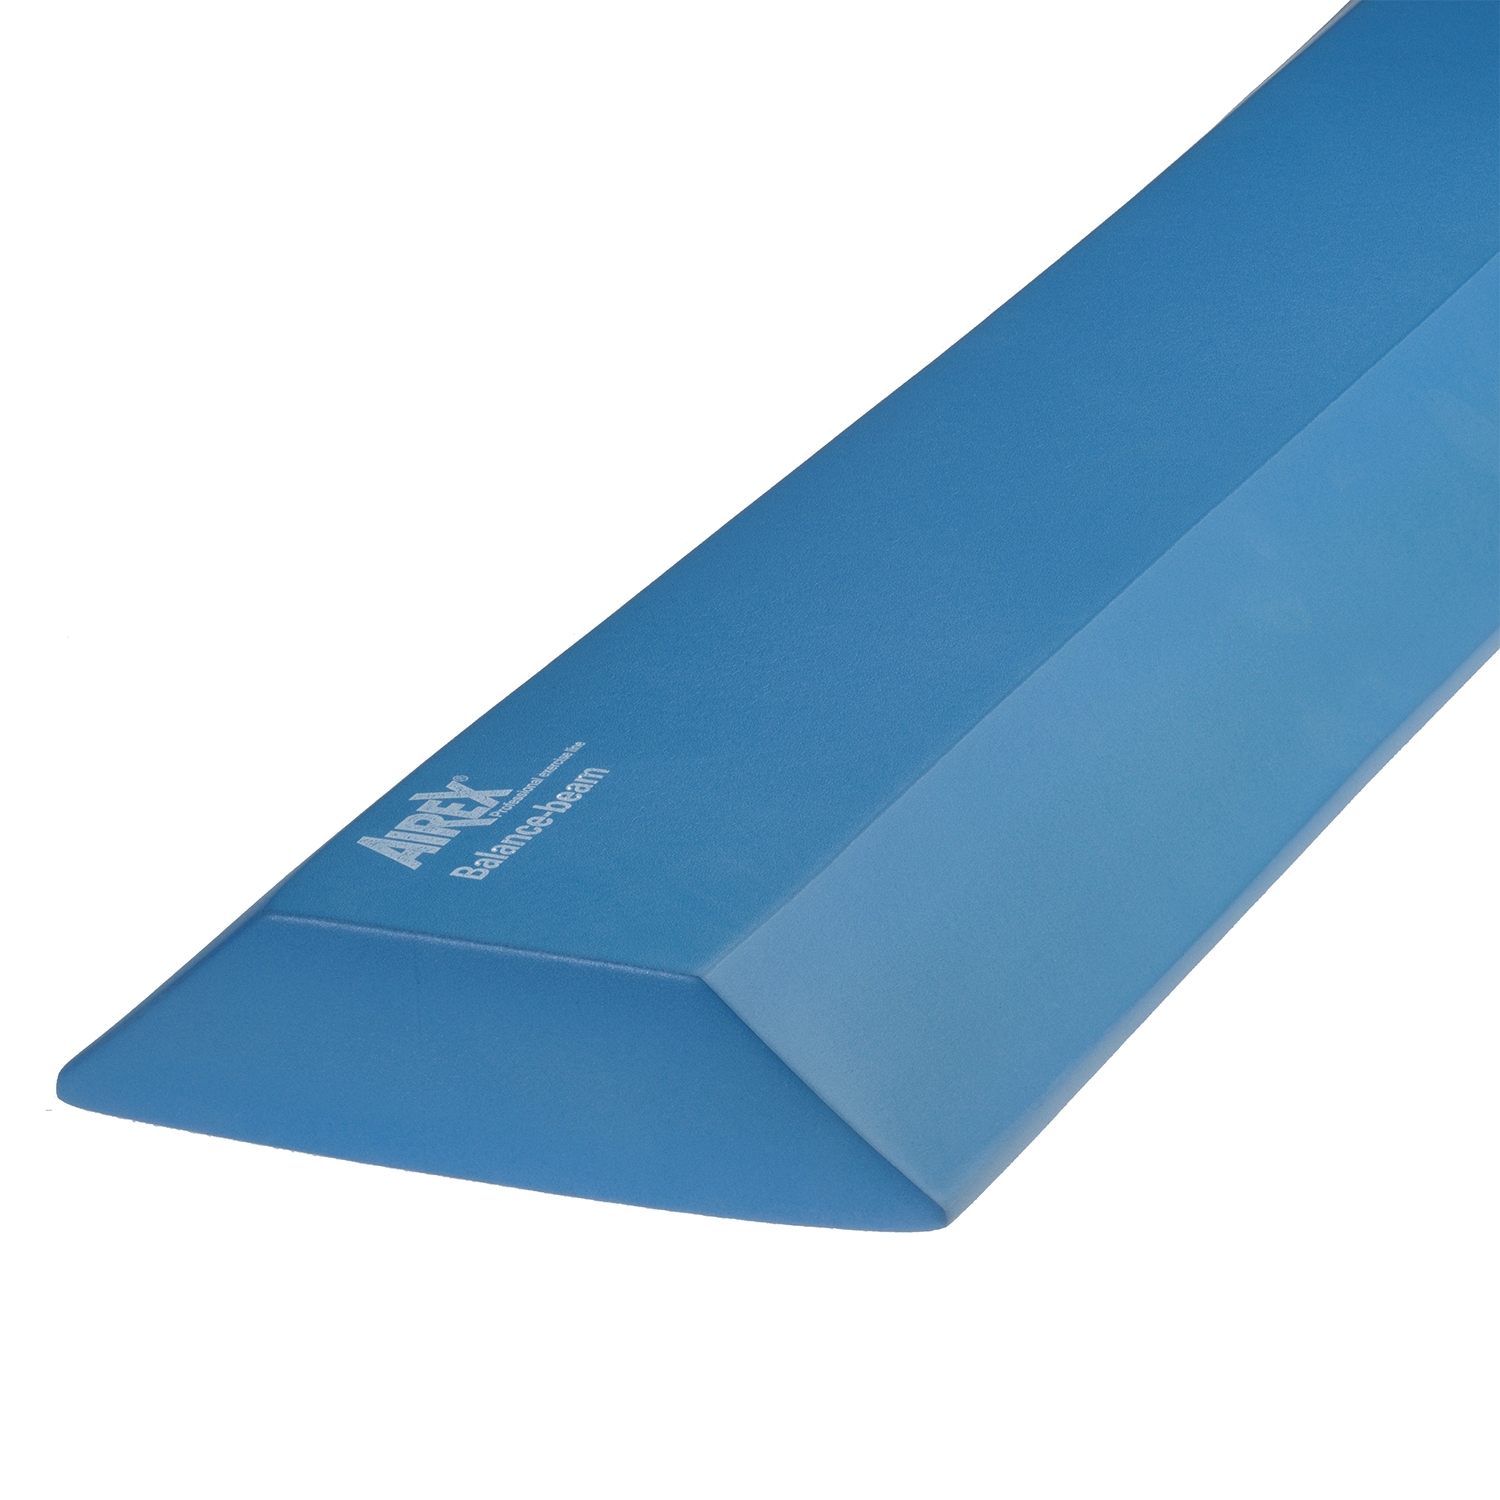 Airex Balance Beam - 160 x 24 x 6 cm - blauw